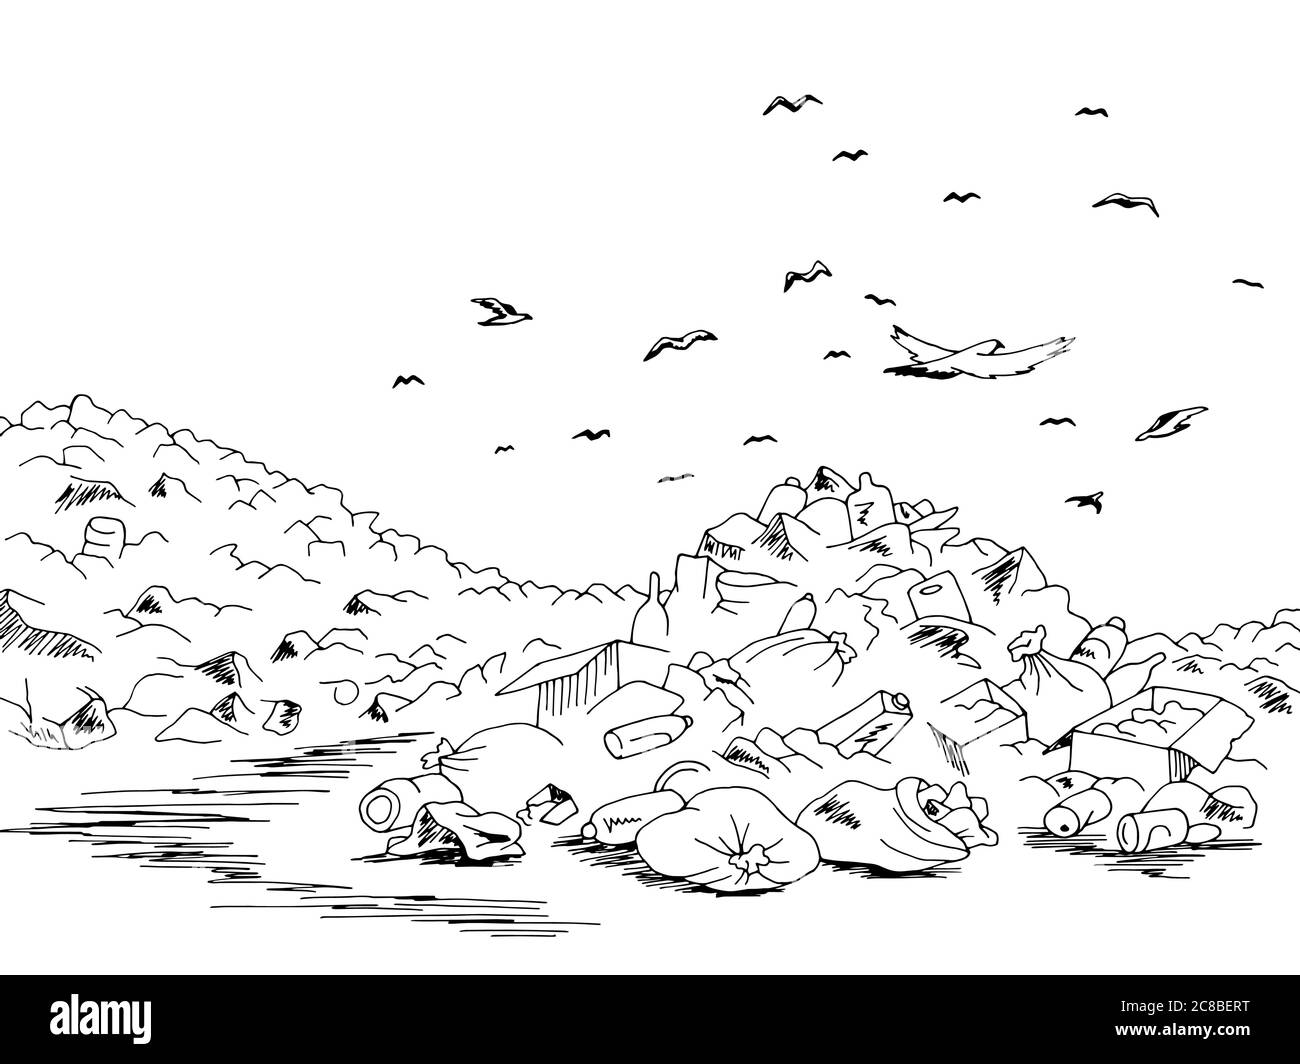 Landfill trash ecology problem graphic black landscape sketch illustration vector Stock Vector